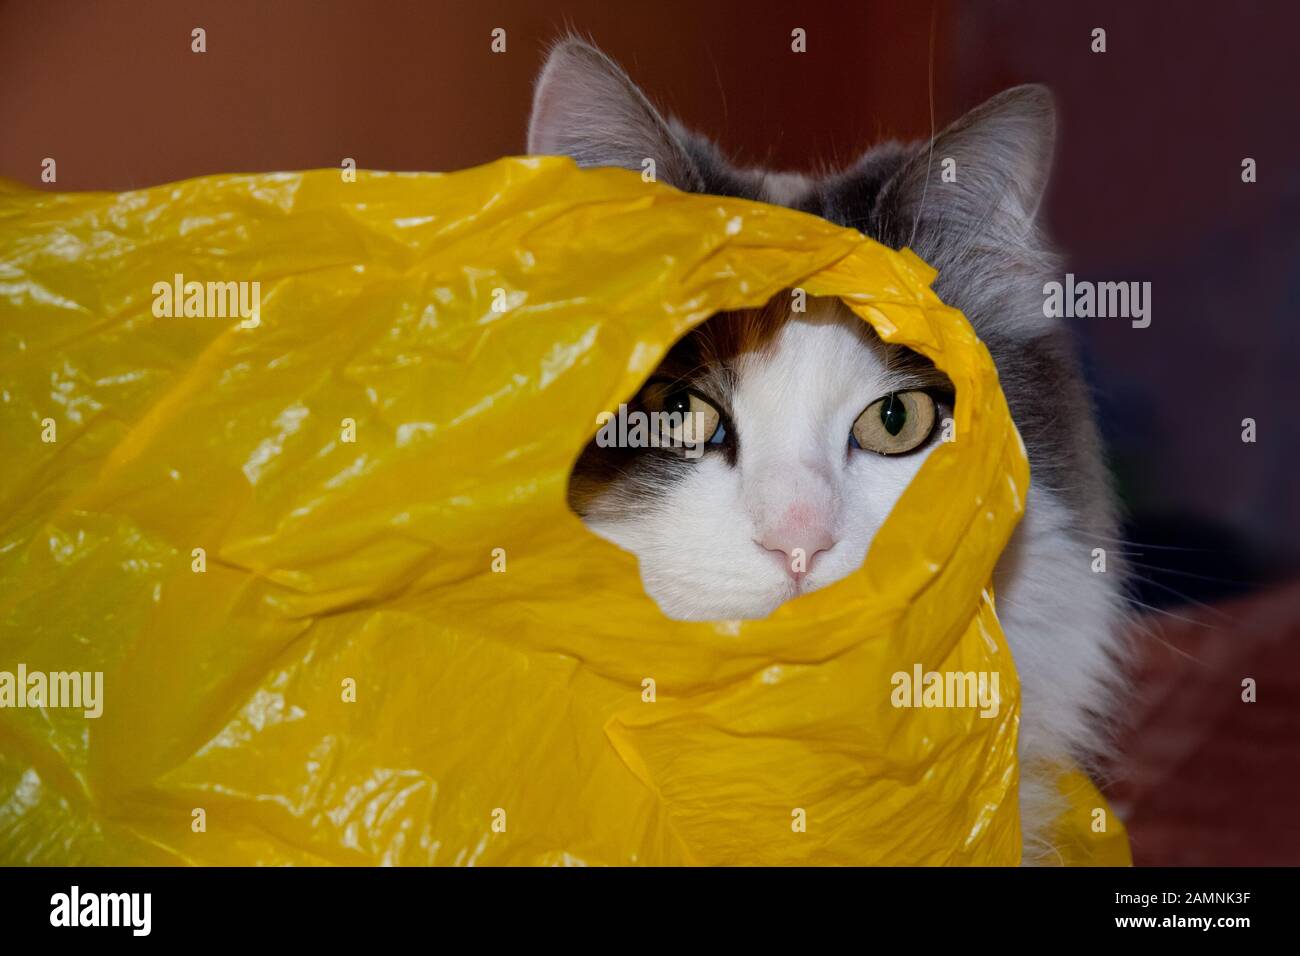 Il Gatto Mangia La Plastica Immagini e Fotos Stock - Alamy